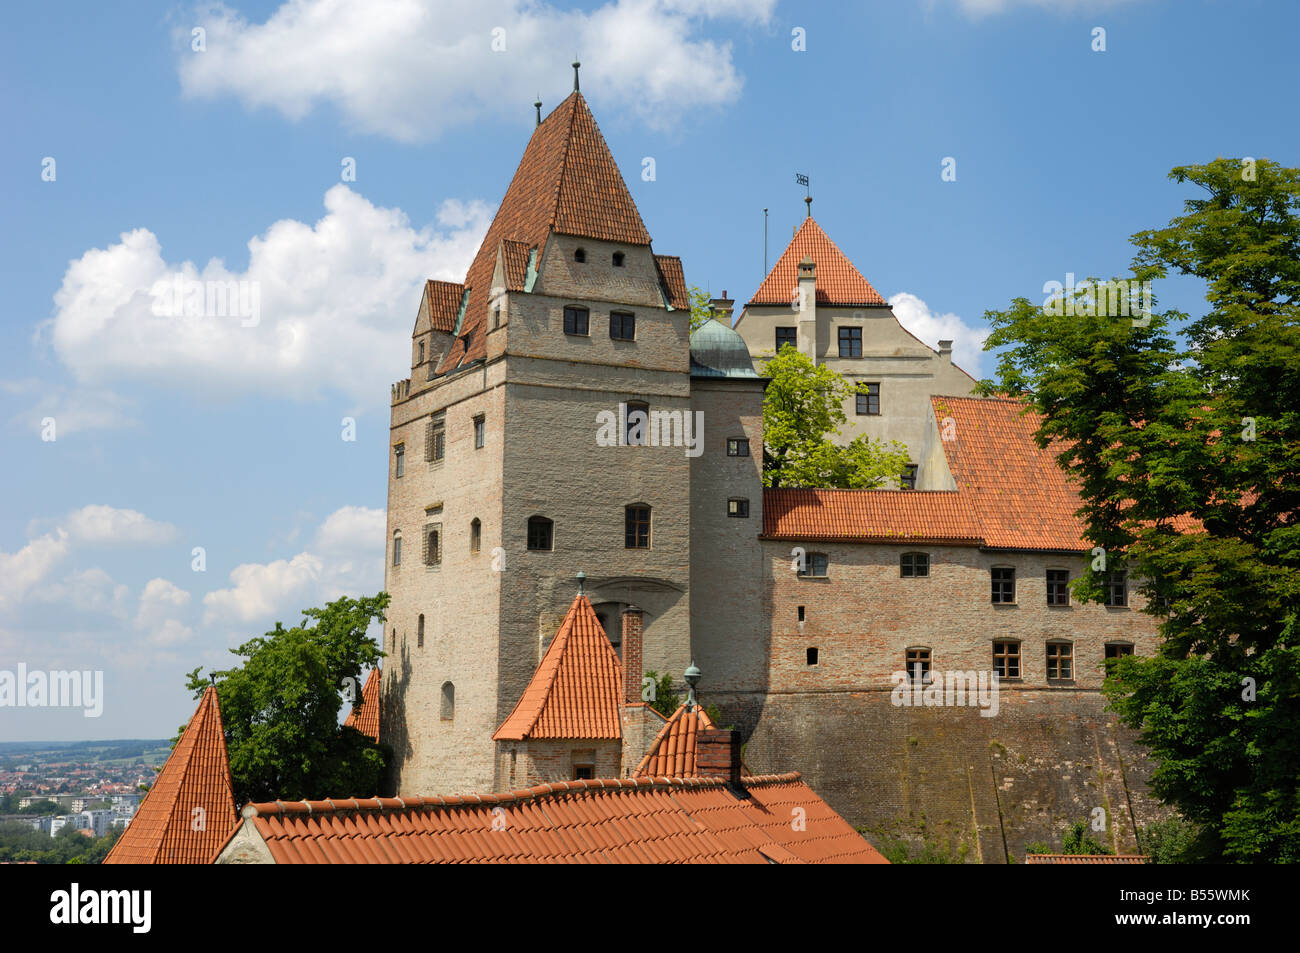 Castle Burg Trausnitz, Landshut, Bavaria, Germany Stock Photo